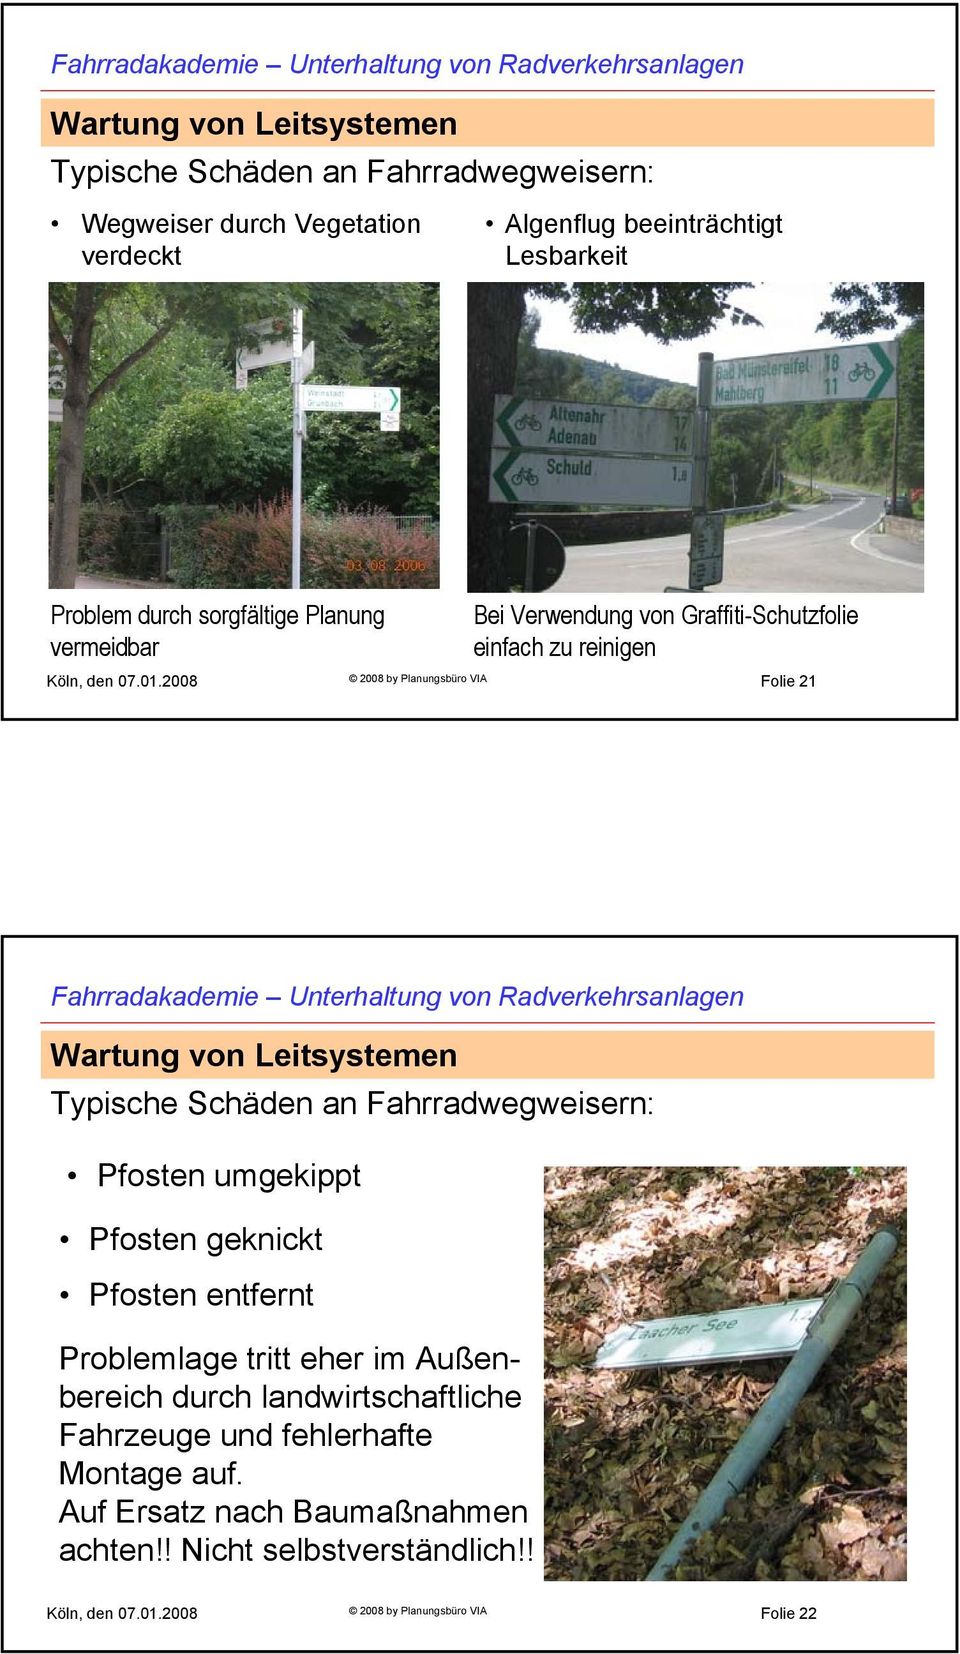 2008 2008 by Planungsbüro VIA Folie 21 Typische Schäden an Fahrradwegweisern: Pfosten umgekippt Pfosten geknickt Pfosten entfernt Problemlage